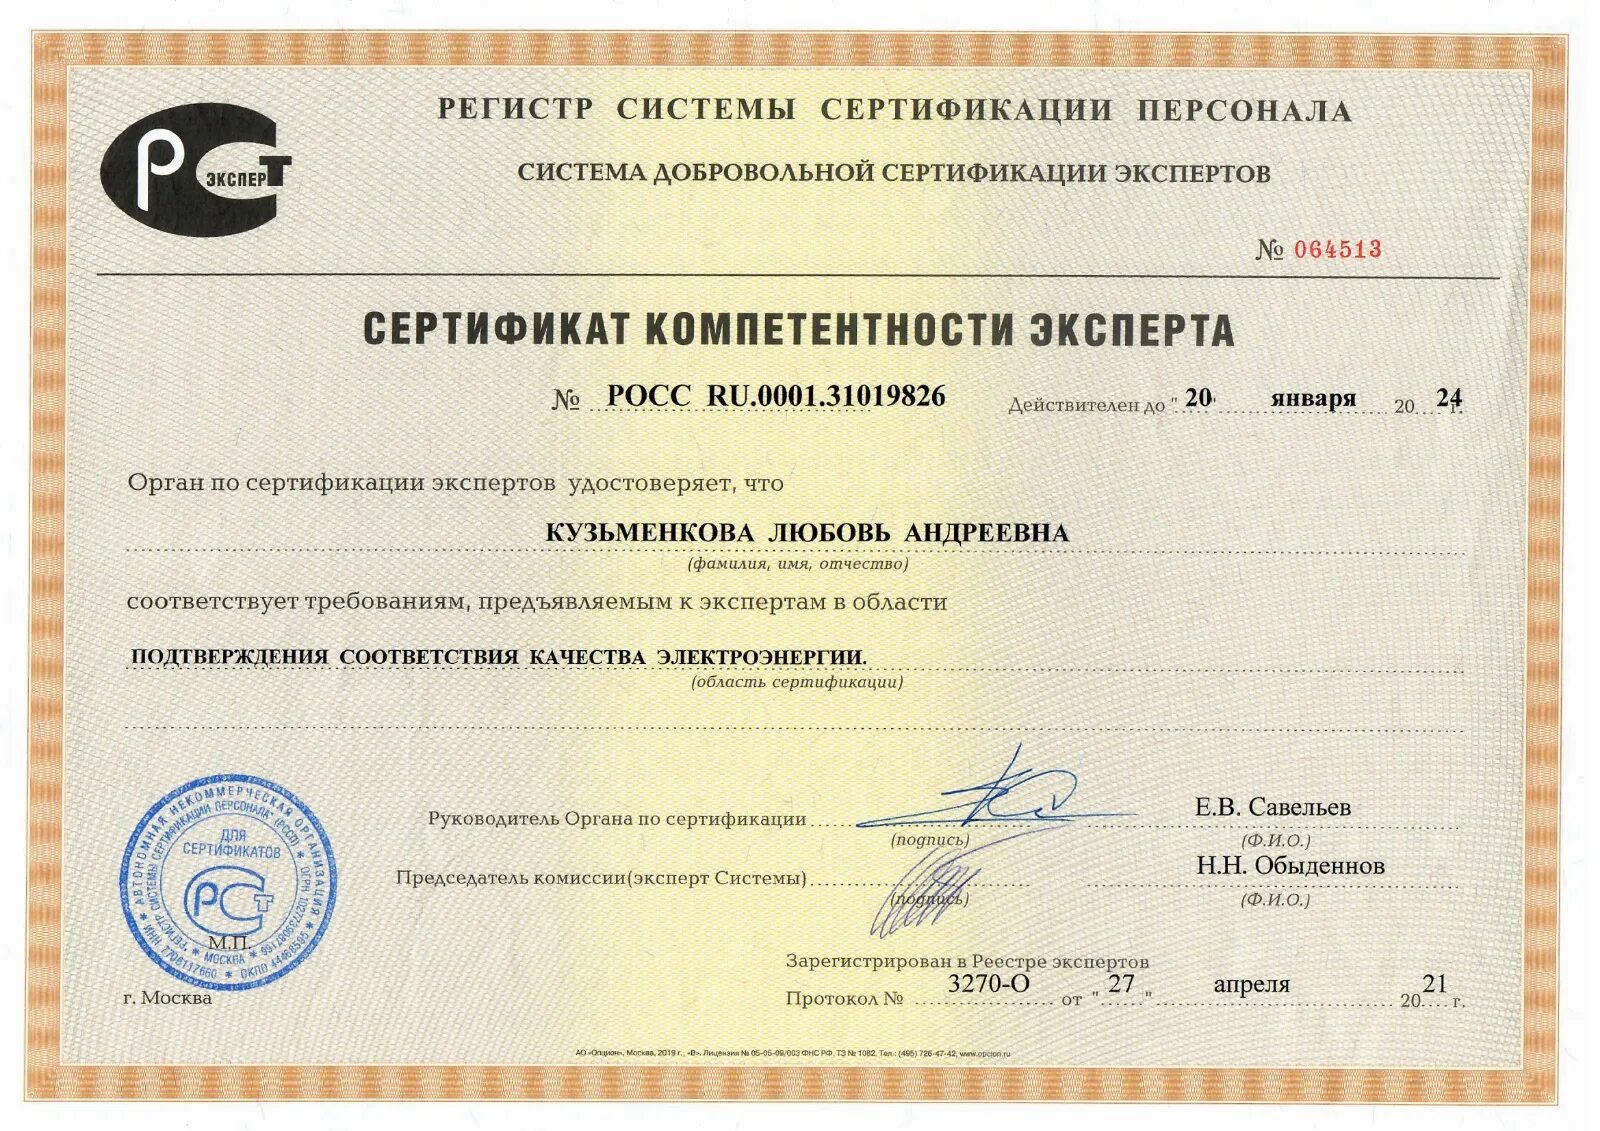 Центр сертификации и качества. Сертификат компетентности эксперта. Орган по сертификации. Эксперт по сертификации. Строительный сертификат.